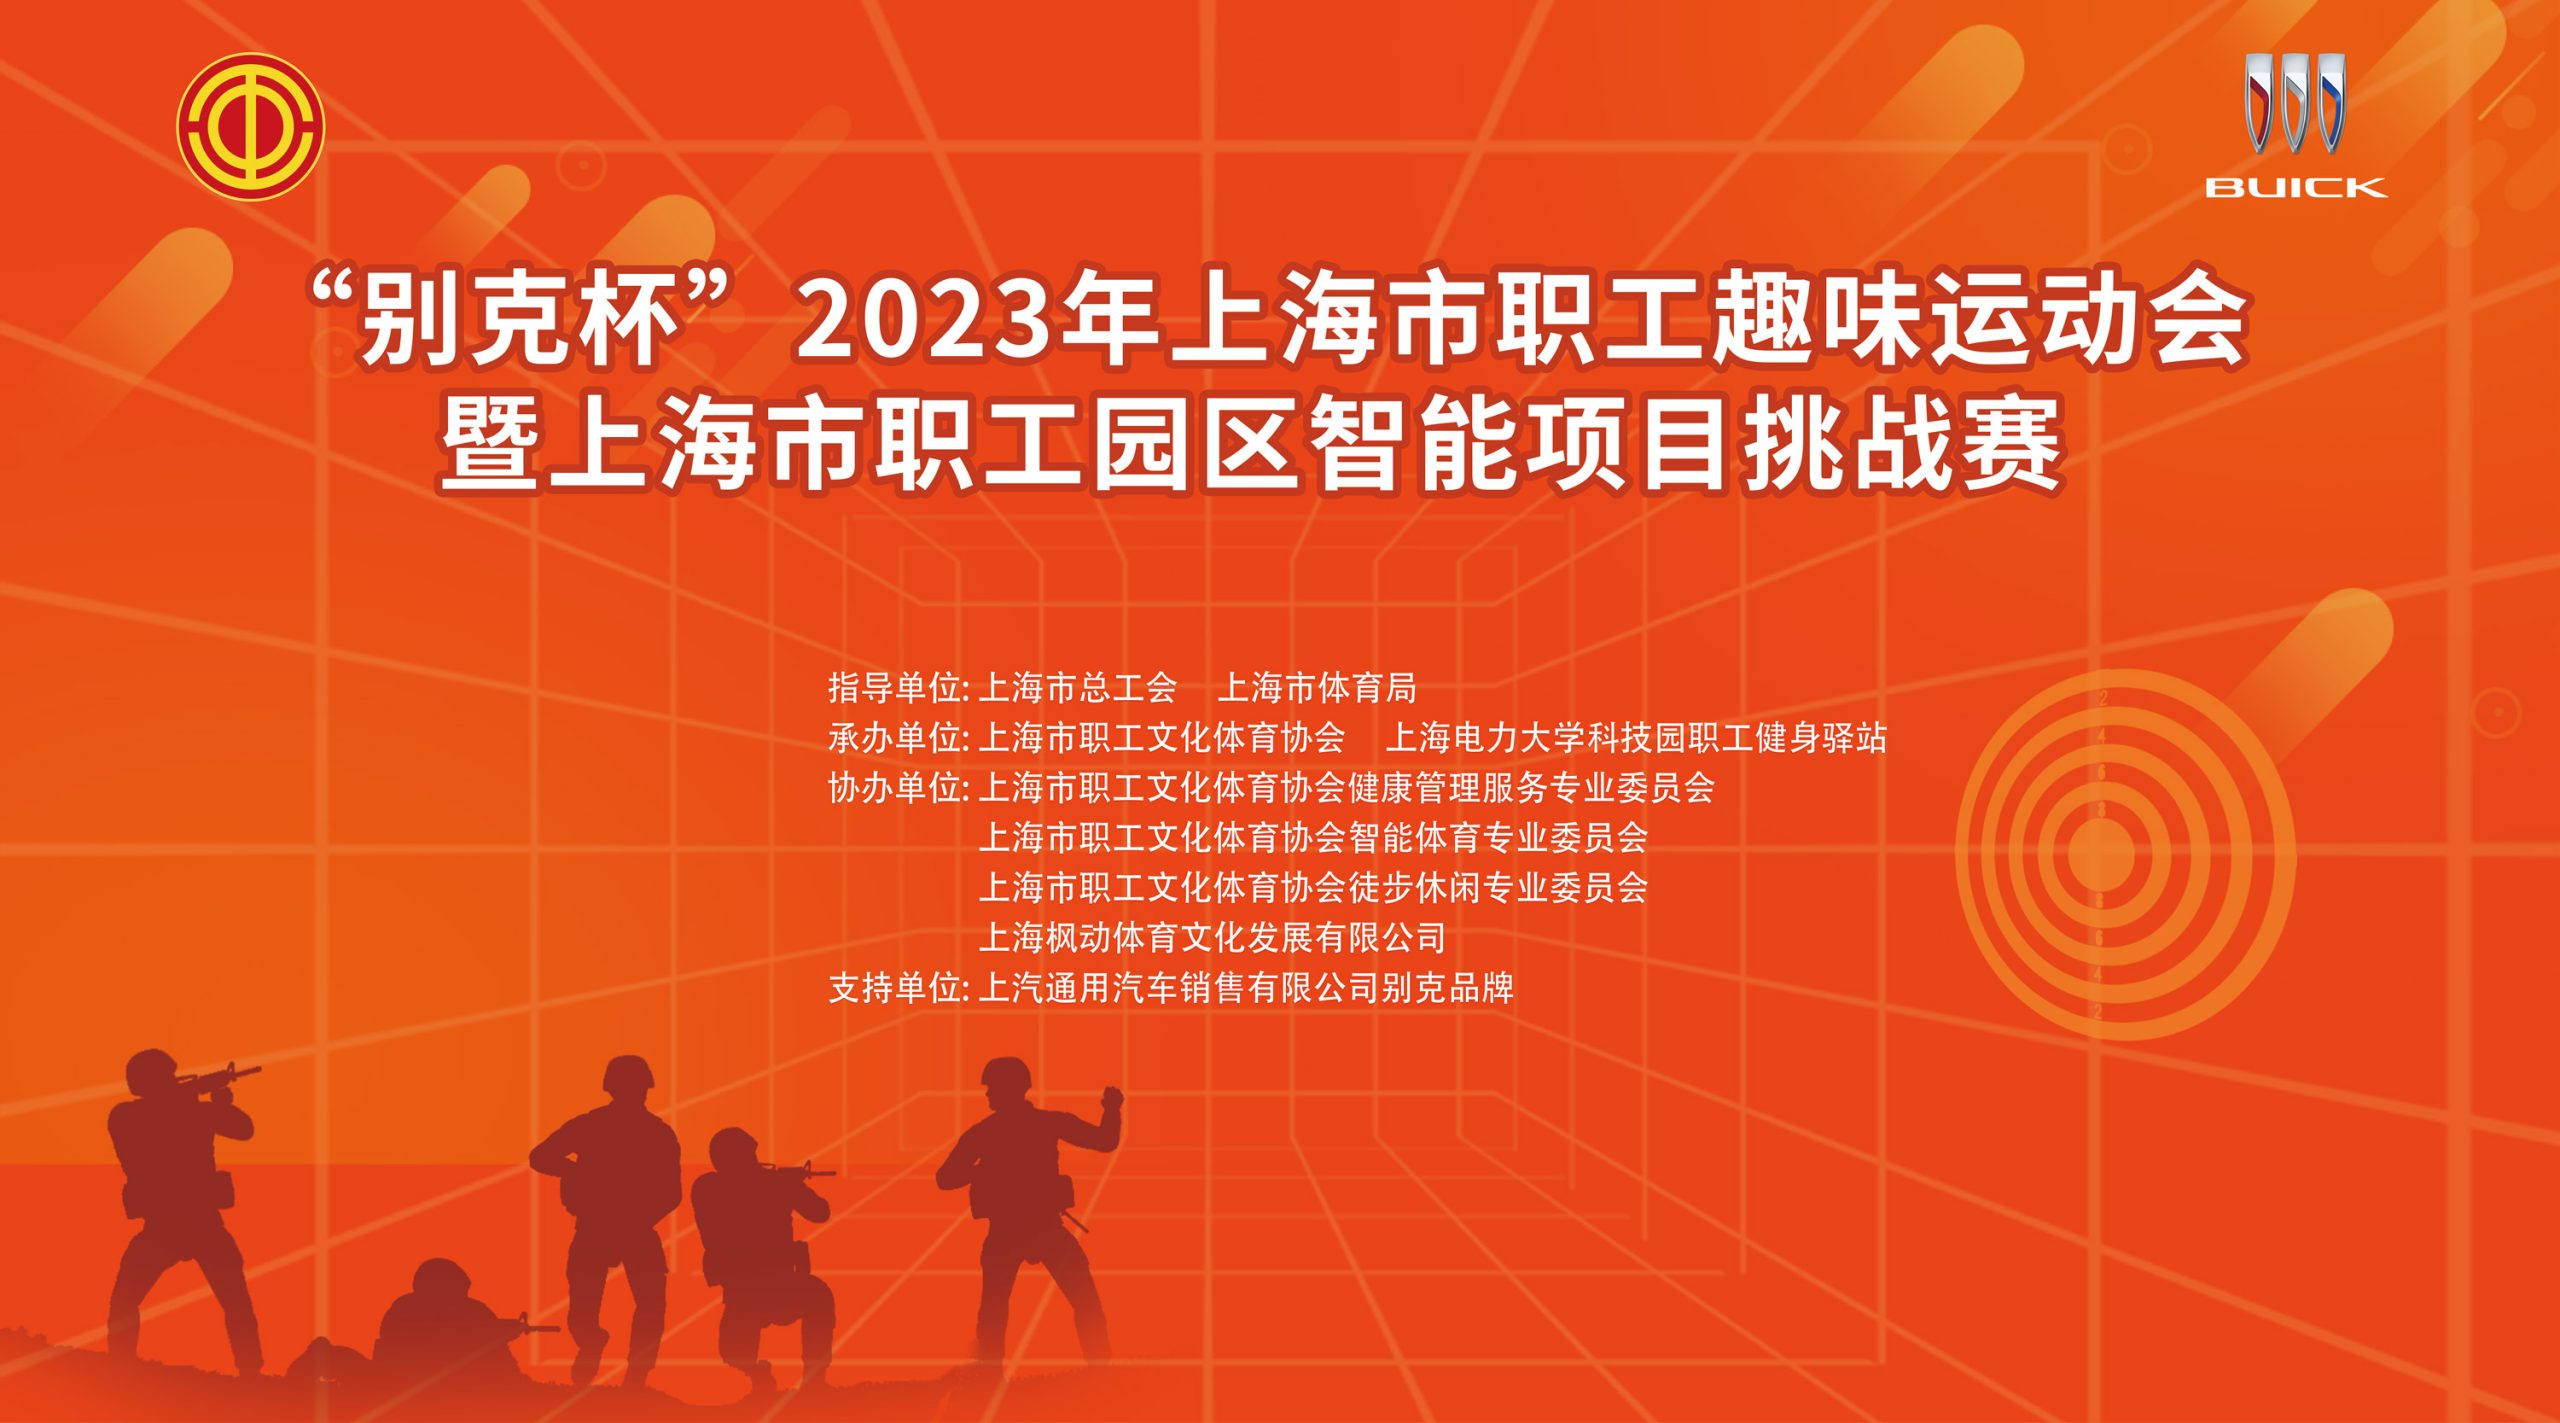 智能射击比赛|“别克杯”2023年上海市职工趣味运动会暨上海市职工园区智能项目挑战赛